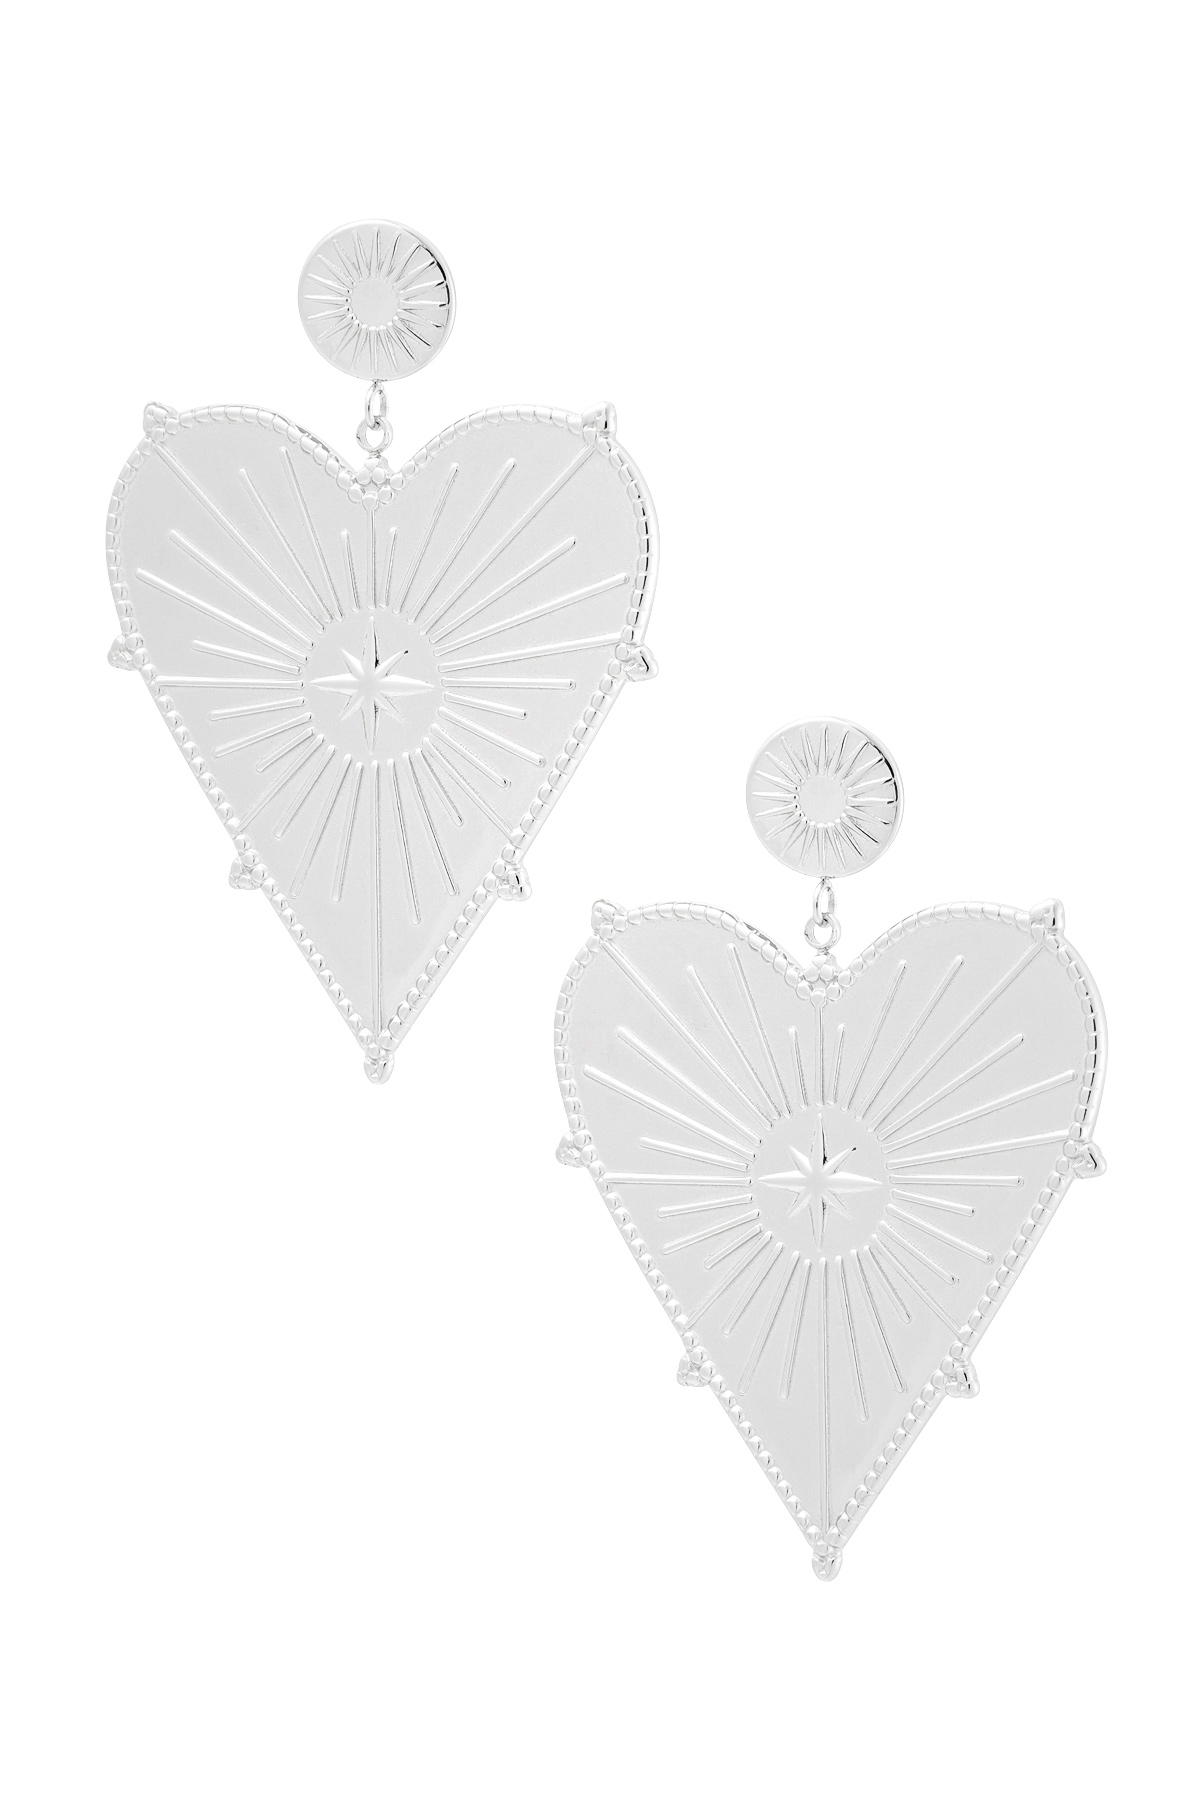 Earrings large heart charm - silver